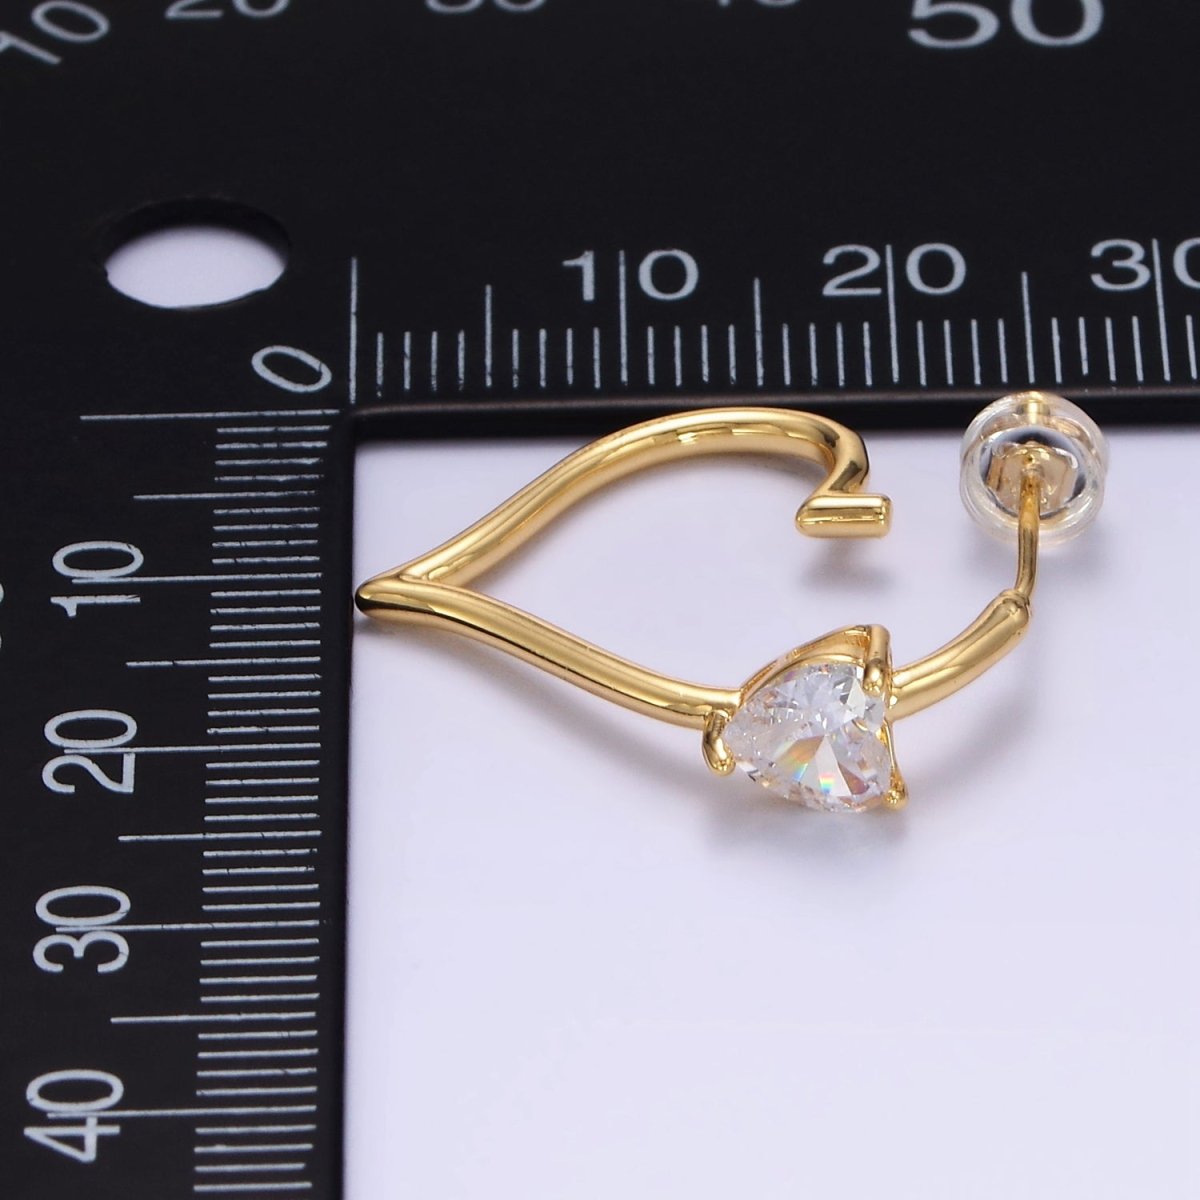 24K Gold Filled Heart CZ J - Shaped Hoop Earrings | AB1185 - DLUXCA